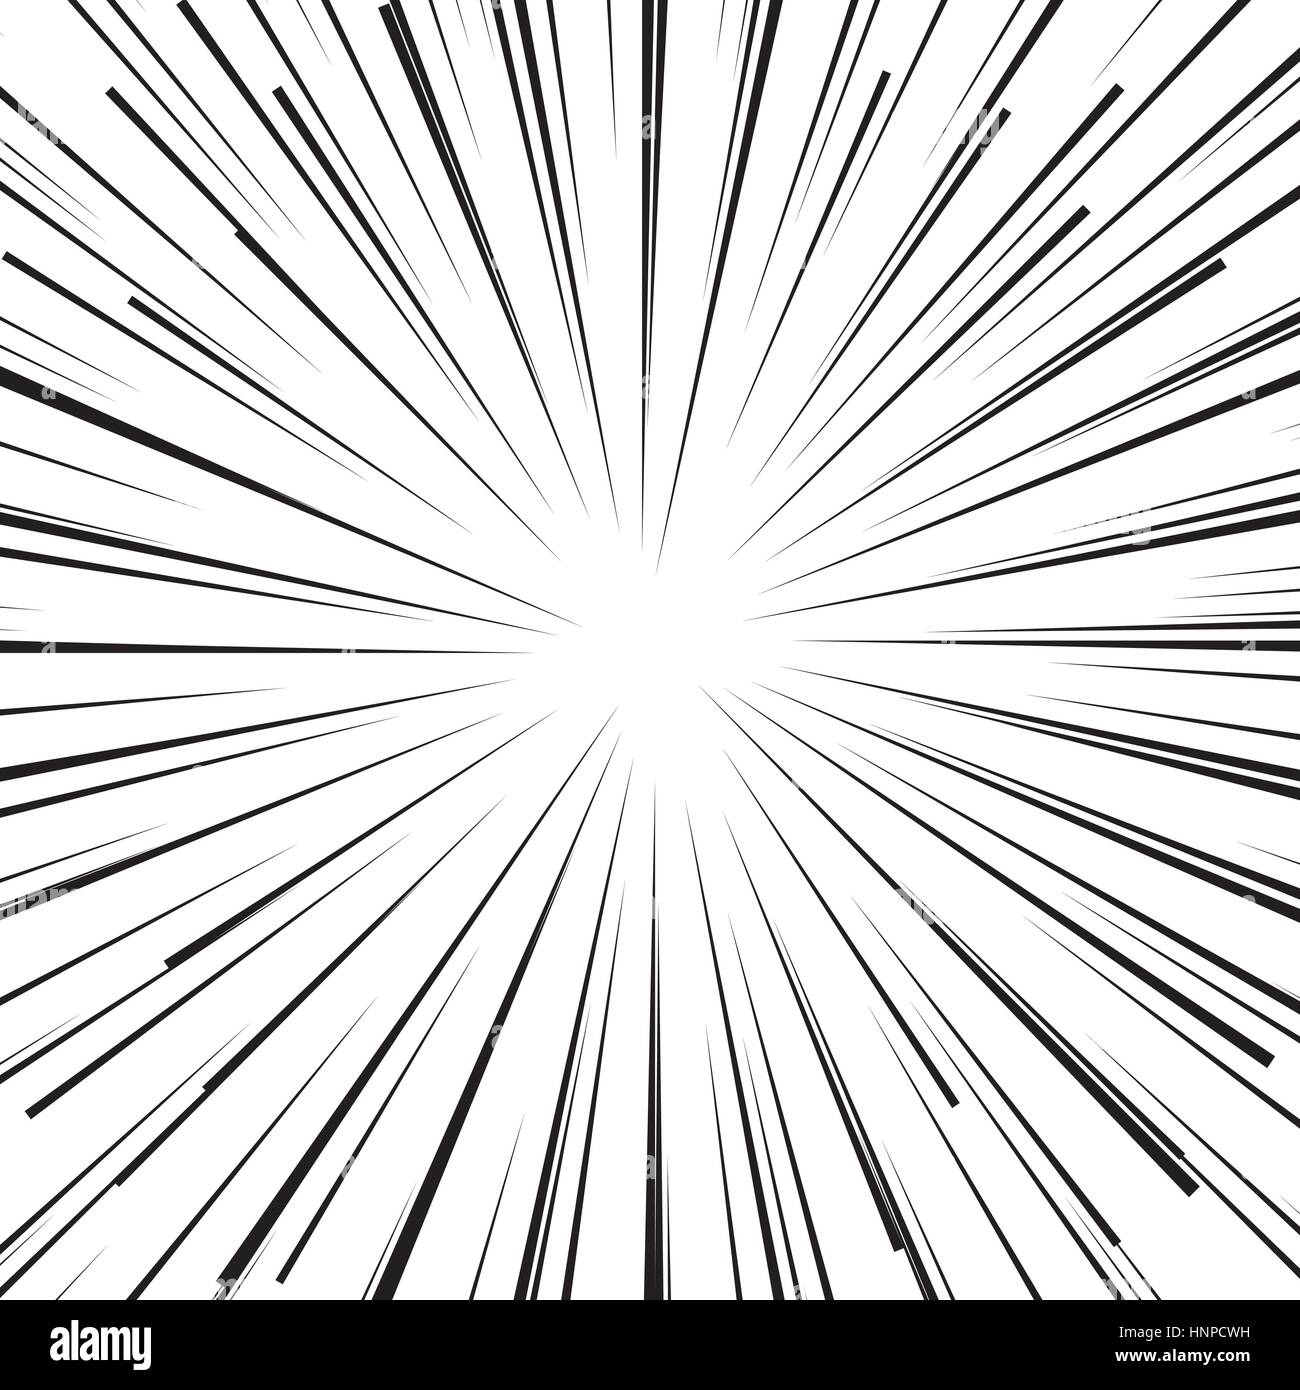 Abstrakte Cartoon Comic Buch Flash-Explosion radiale Linien Hintergrund. Vektor-Illustration für Superhelden-Design. Leuchtend schwarz weiße Lichtleiste platzen. F Stock Vektor